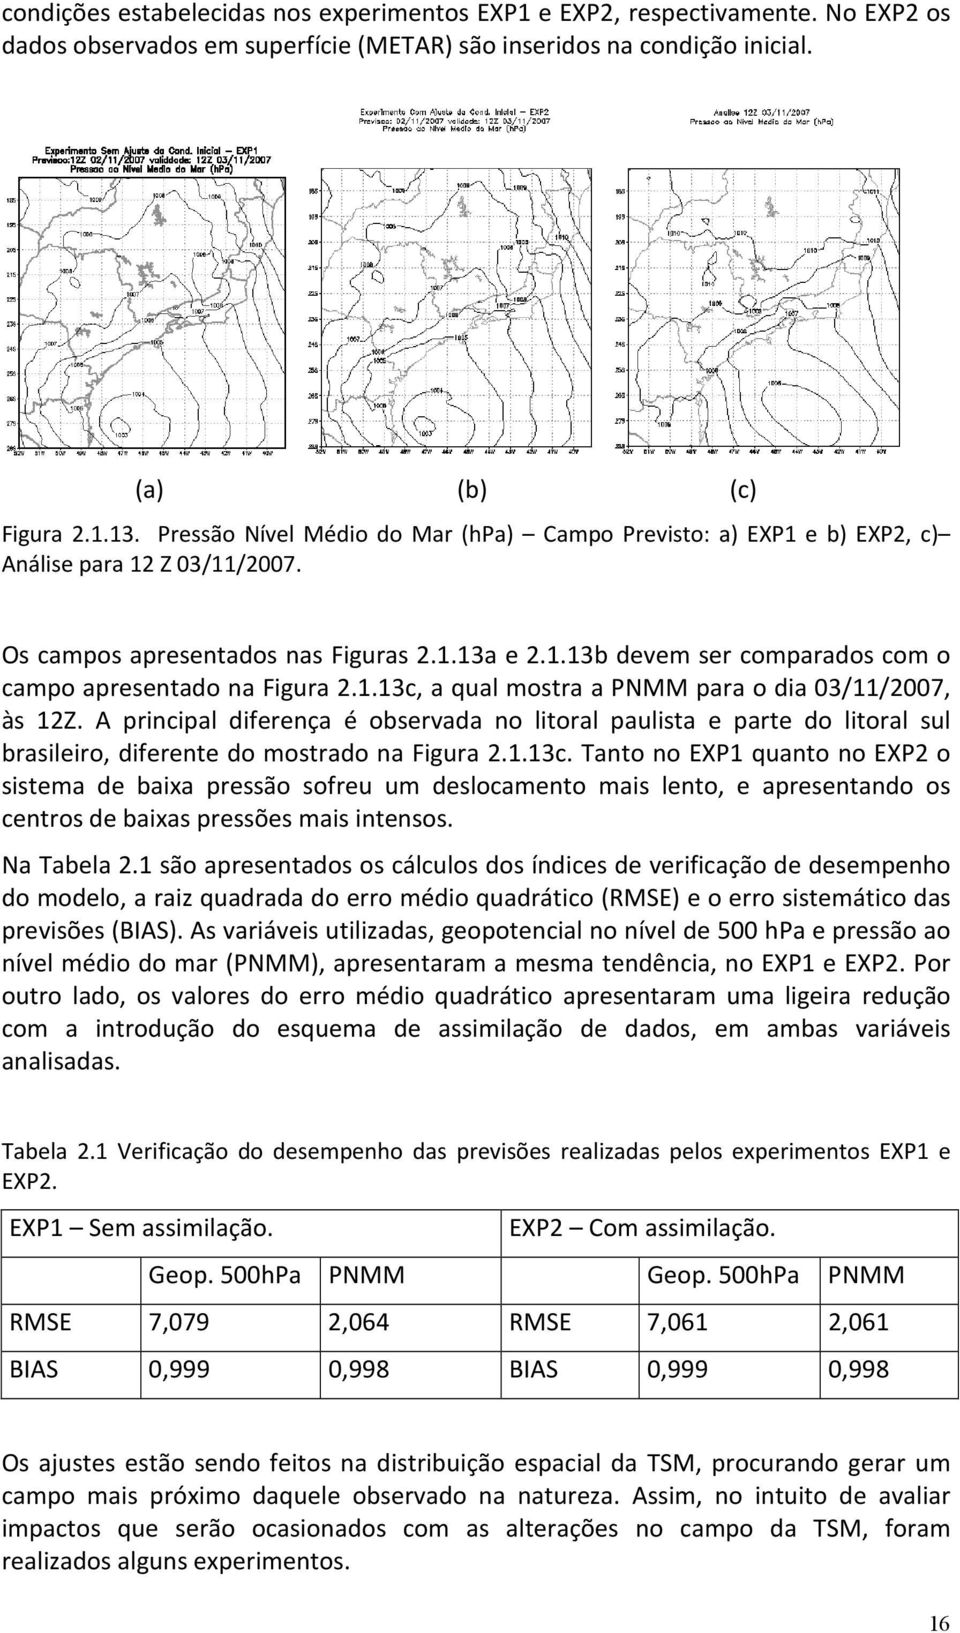 1.13c, a qual mostra a PNMM para o dia 03/11/2007, às 12Z. A principal diferença é observada no litoral paulista e parte do litoral sul brasileiro, diferente do mostrado na Figura 2.1.13c. Tanto no EXP1 quanto no EXP2 o sistema de baixa pressão sofreu um deslocamento mais lento, e apresentando os centros de baixas pressões mais intensos.